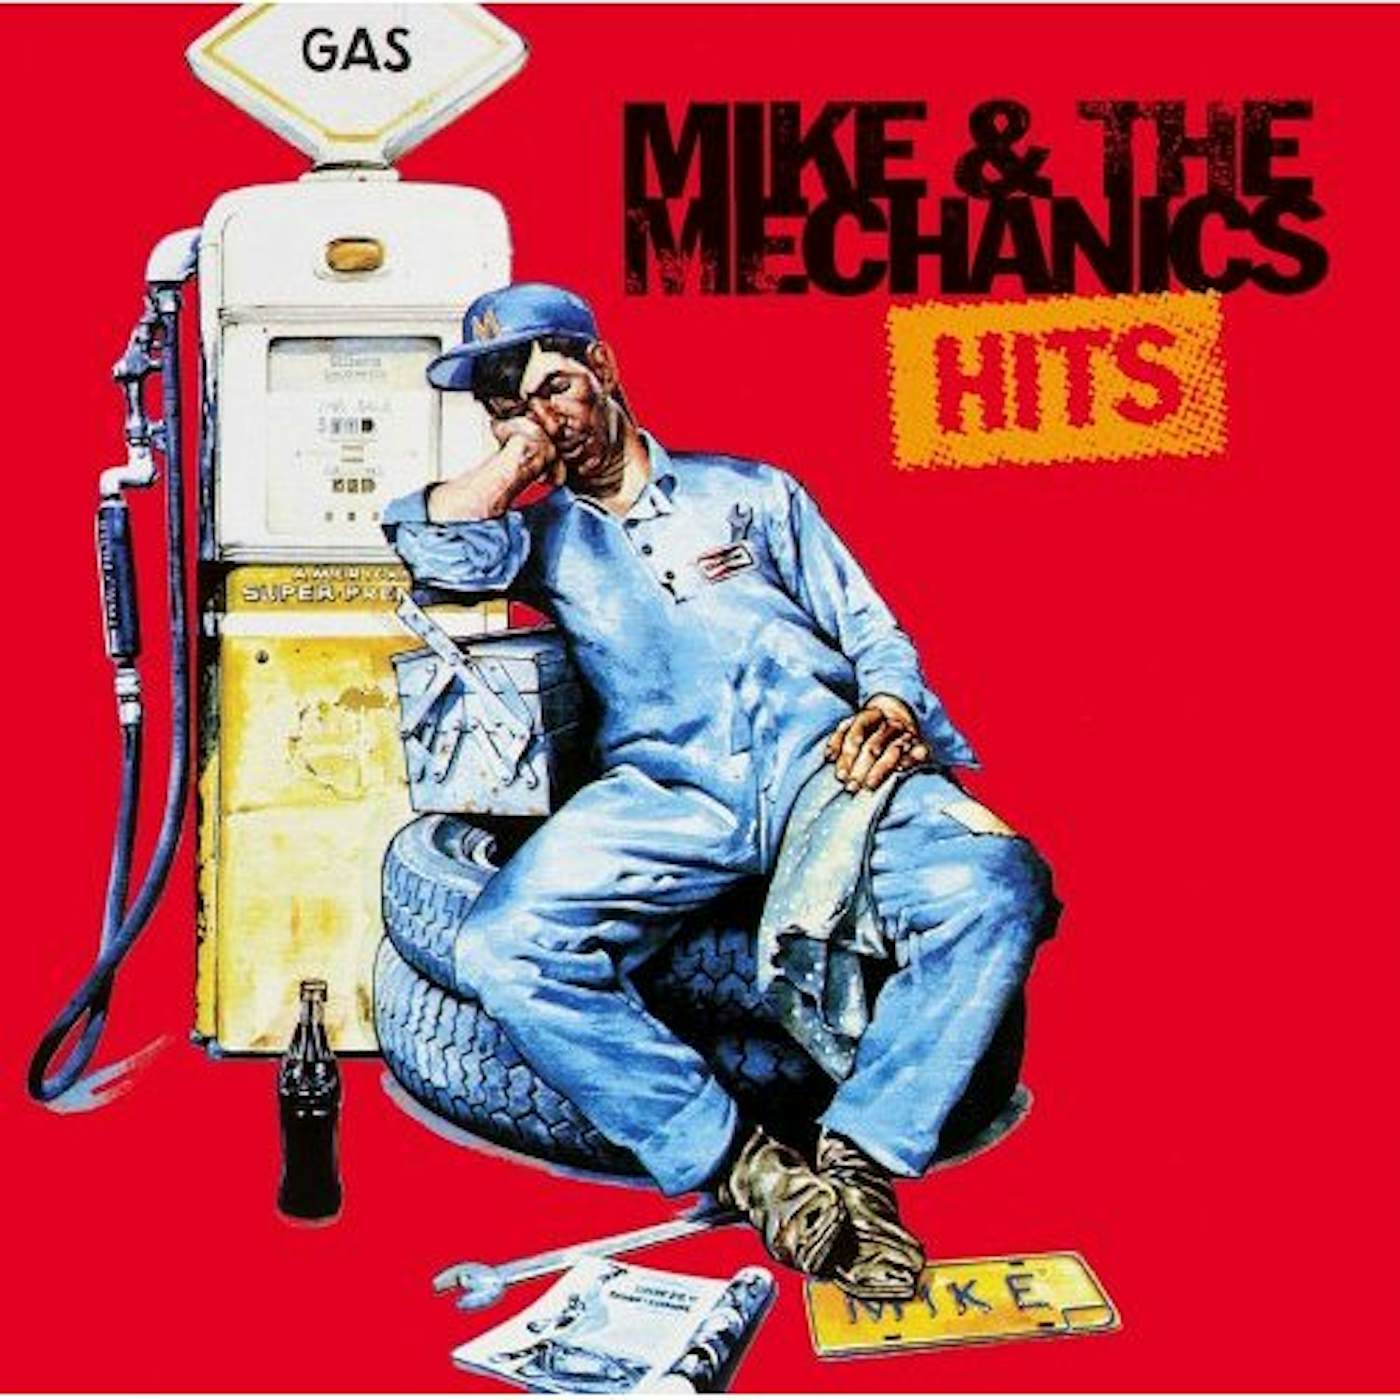 Mike + The Mechanics HITS CD